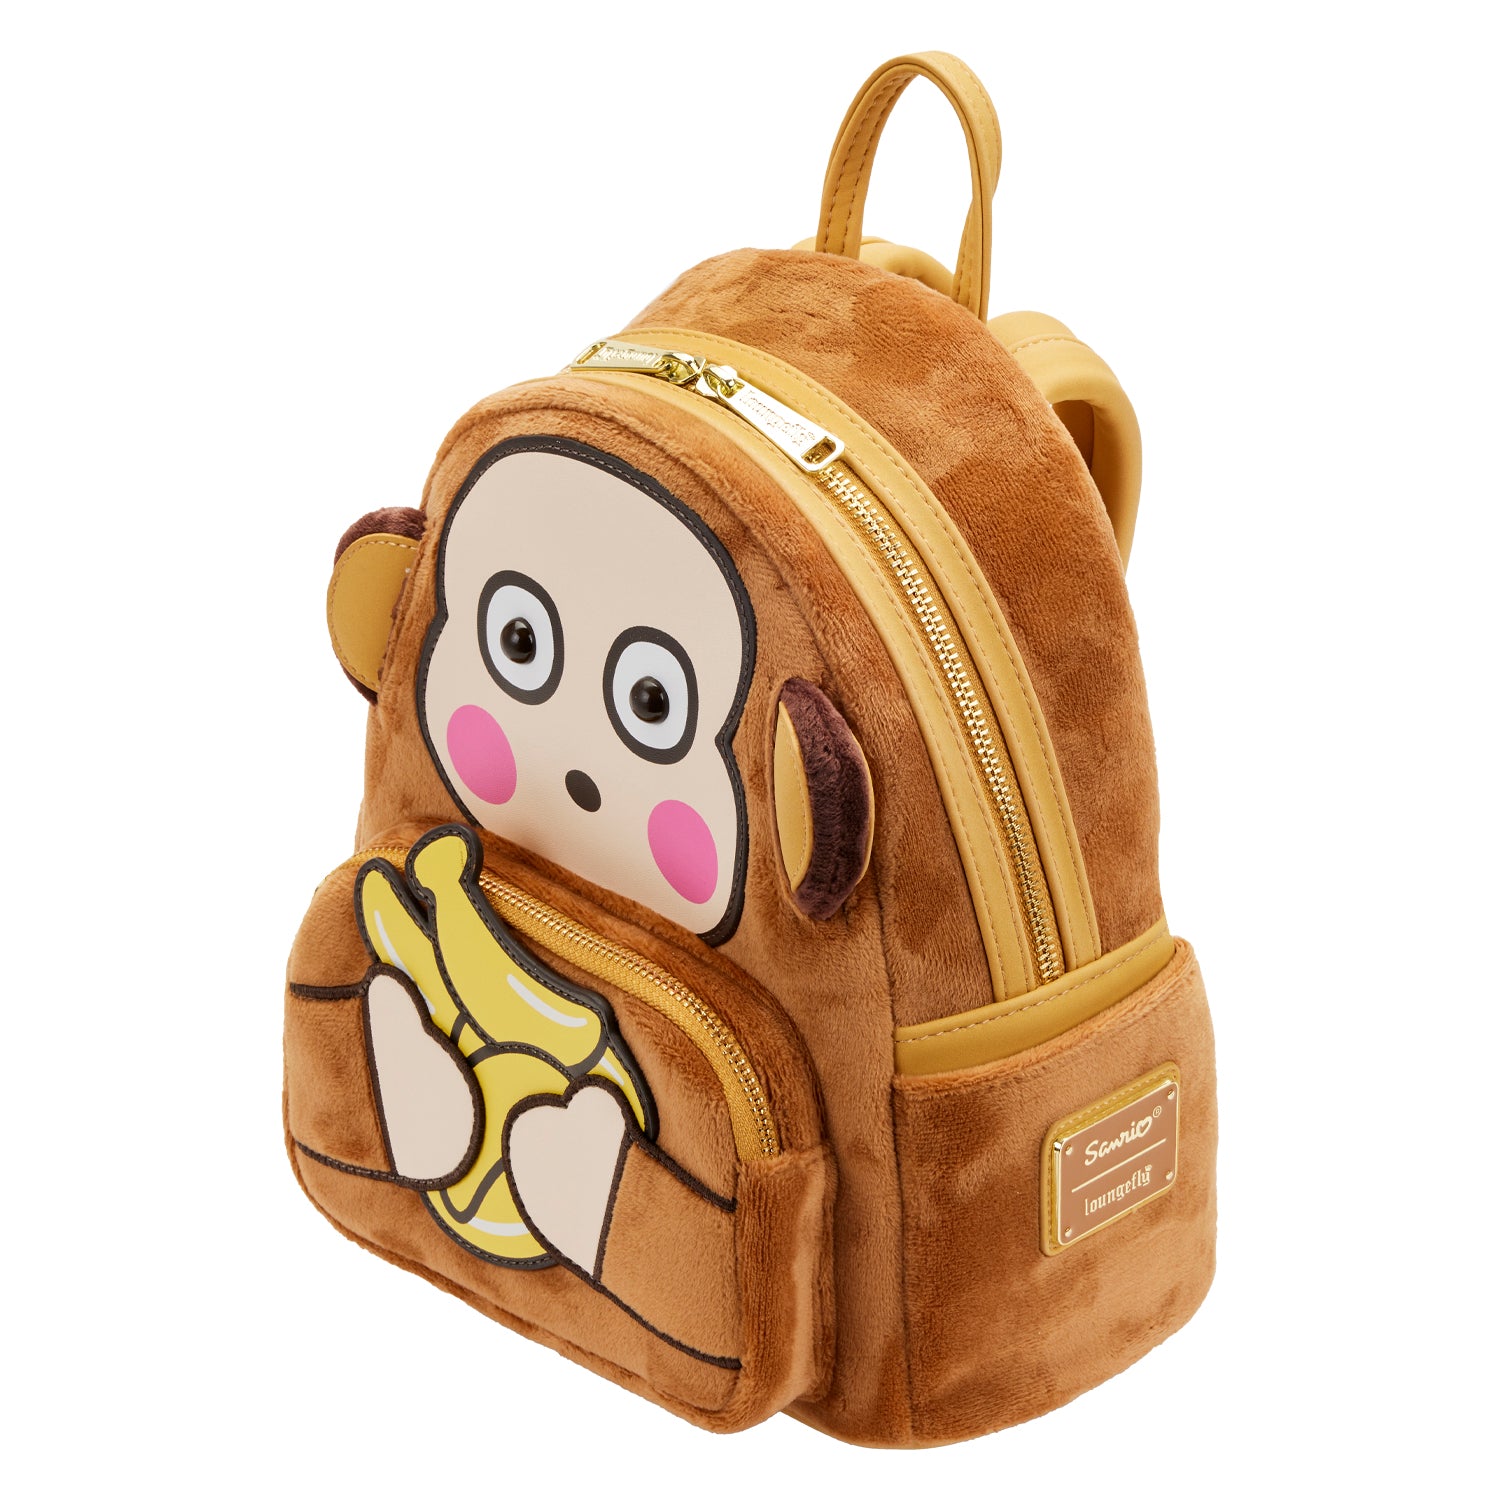 Sanrio | Monkichi Cosplay Mini Backpack